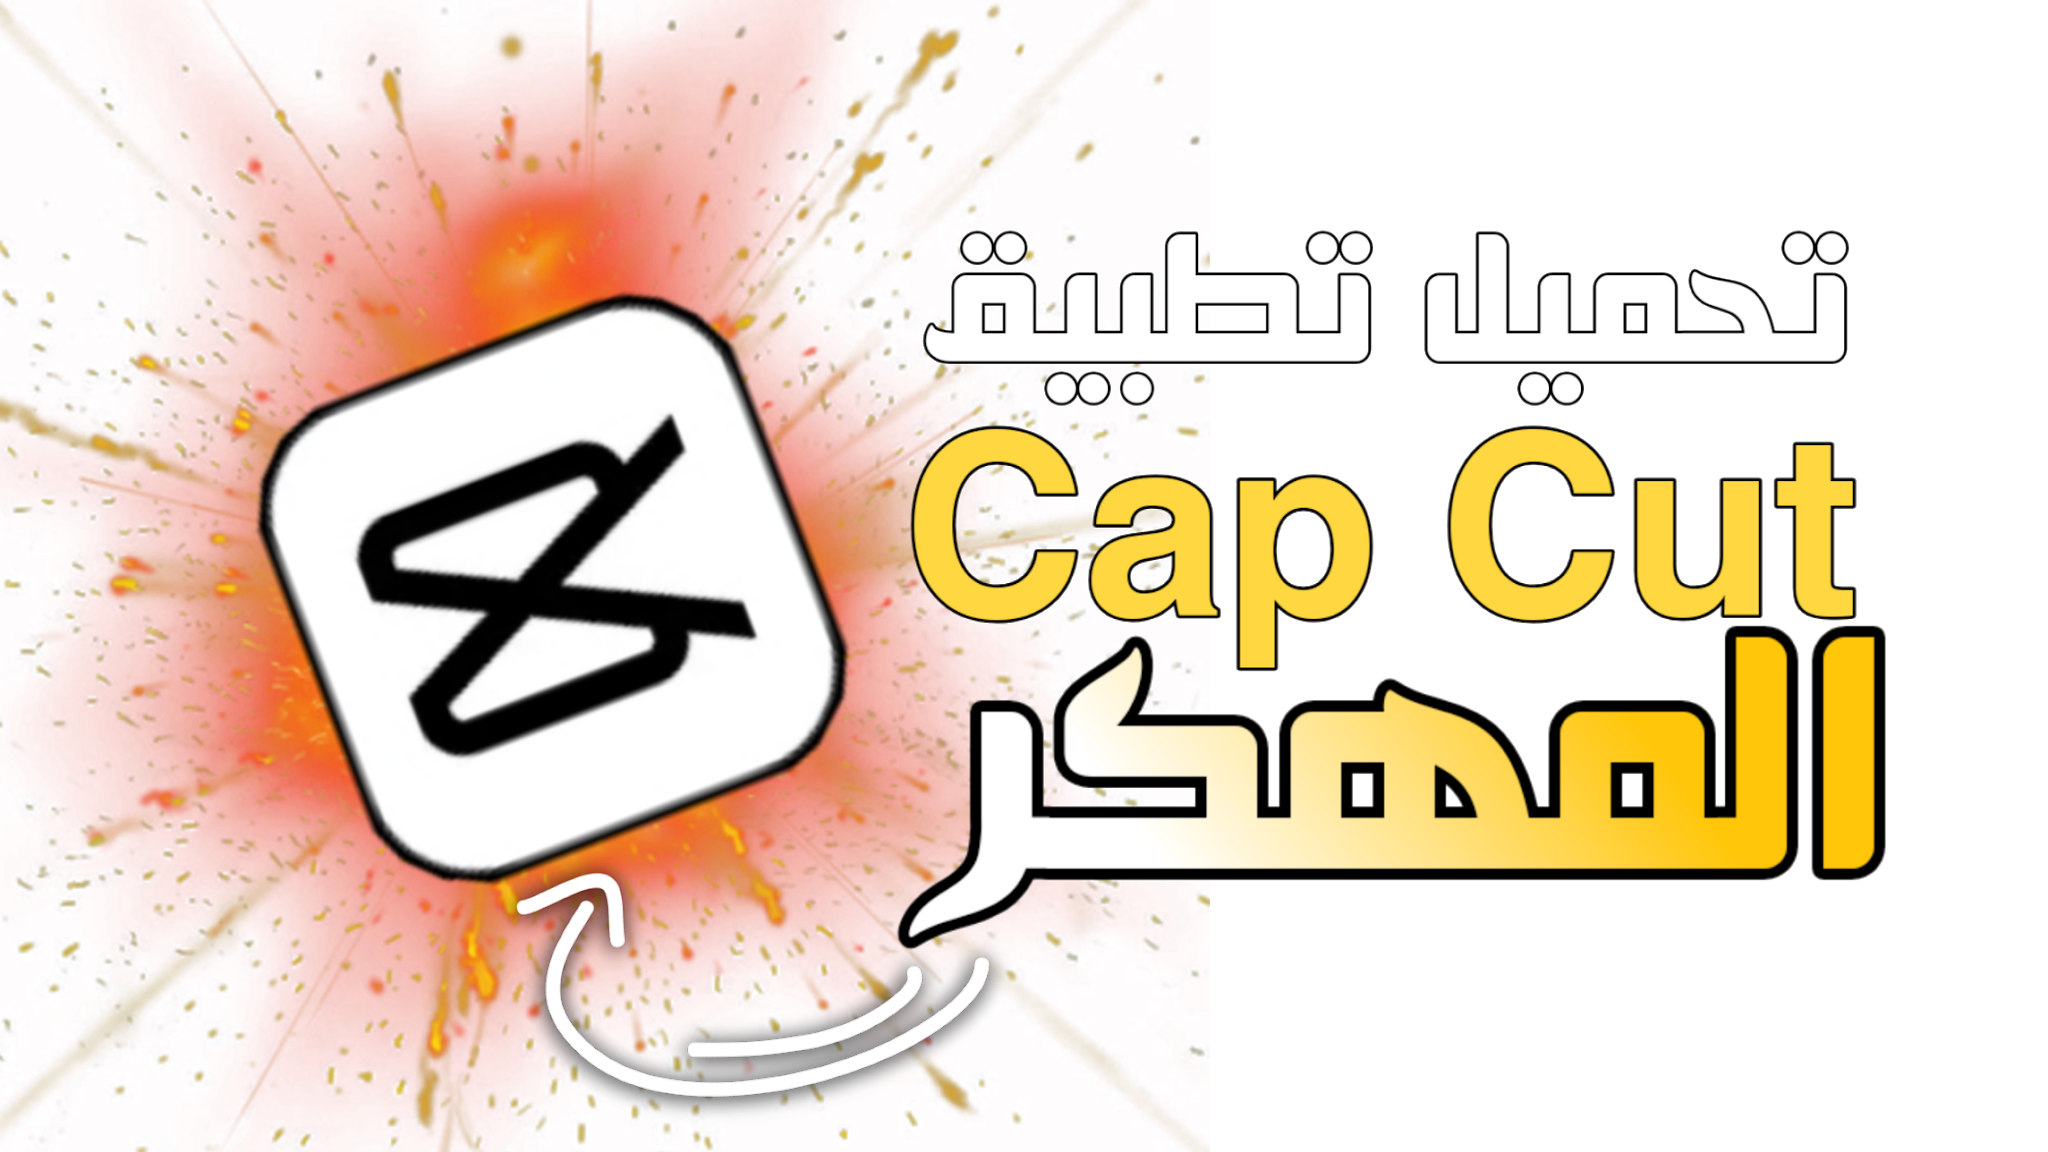 Cap cut apk. CAPCUT лого. Cap Cut логотип. Хабиби CAPCUT. Cap Cut logo PNG.